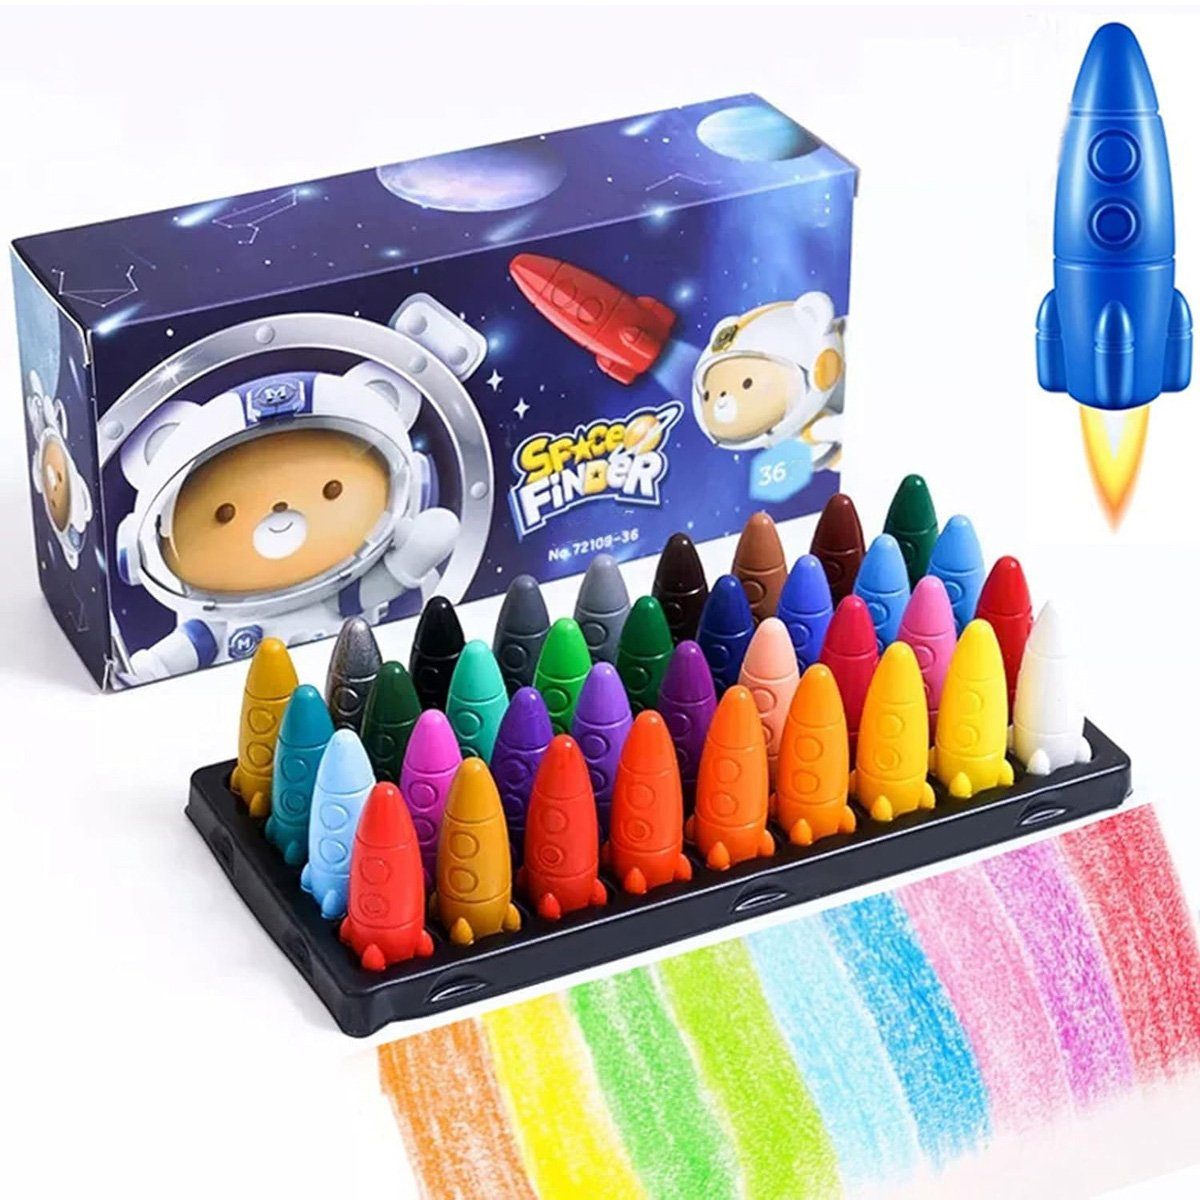 yozhiqu Wachsmalstift Mehrfarbige Weltraummalstifte,ungiftige Buntstifte für Kinder-36 stuck, (36-tlg), Leicht zu halten, sicheres Material, farbenfrohes Stift-Geschenkset